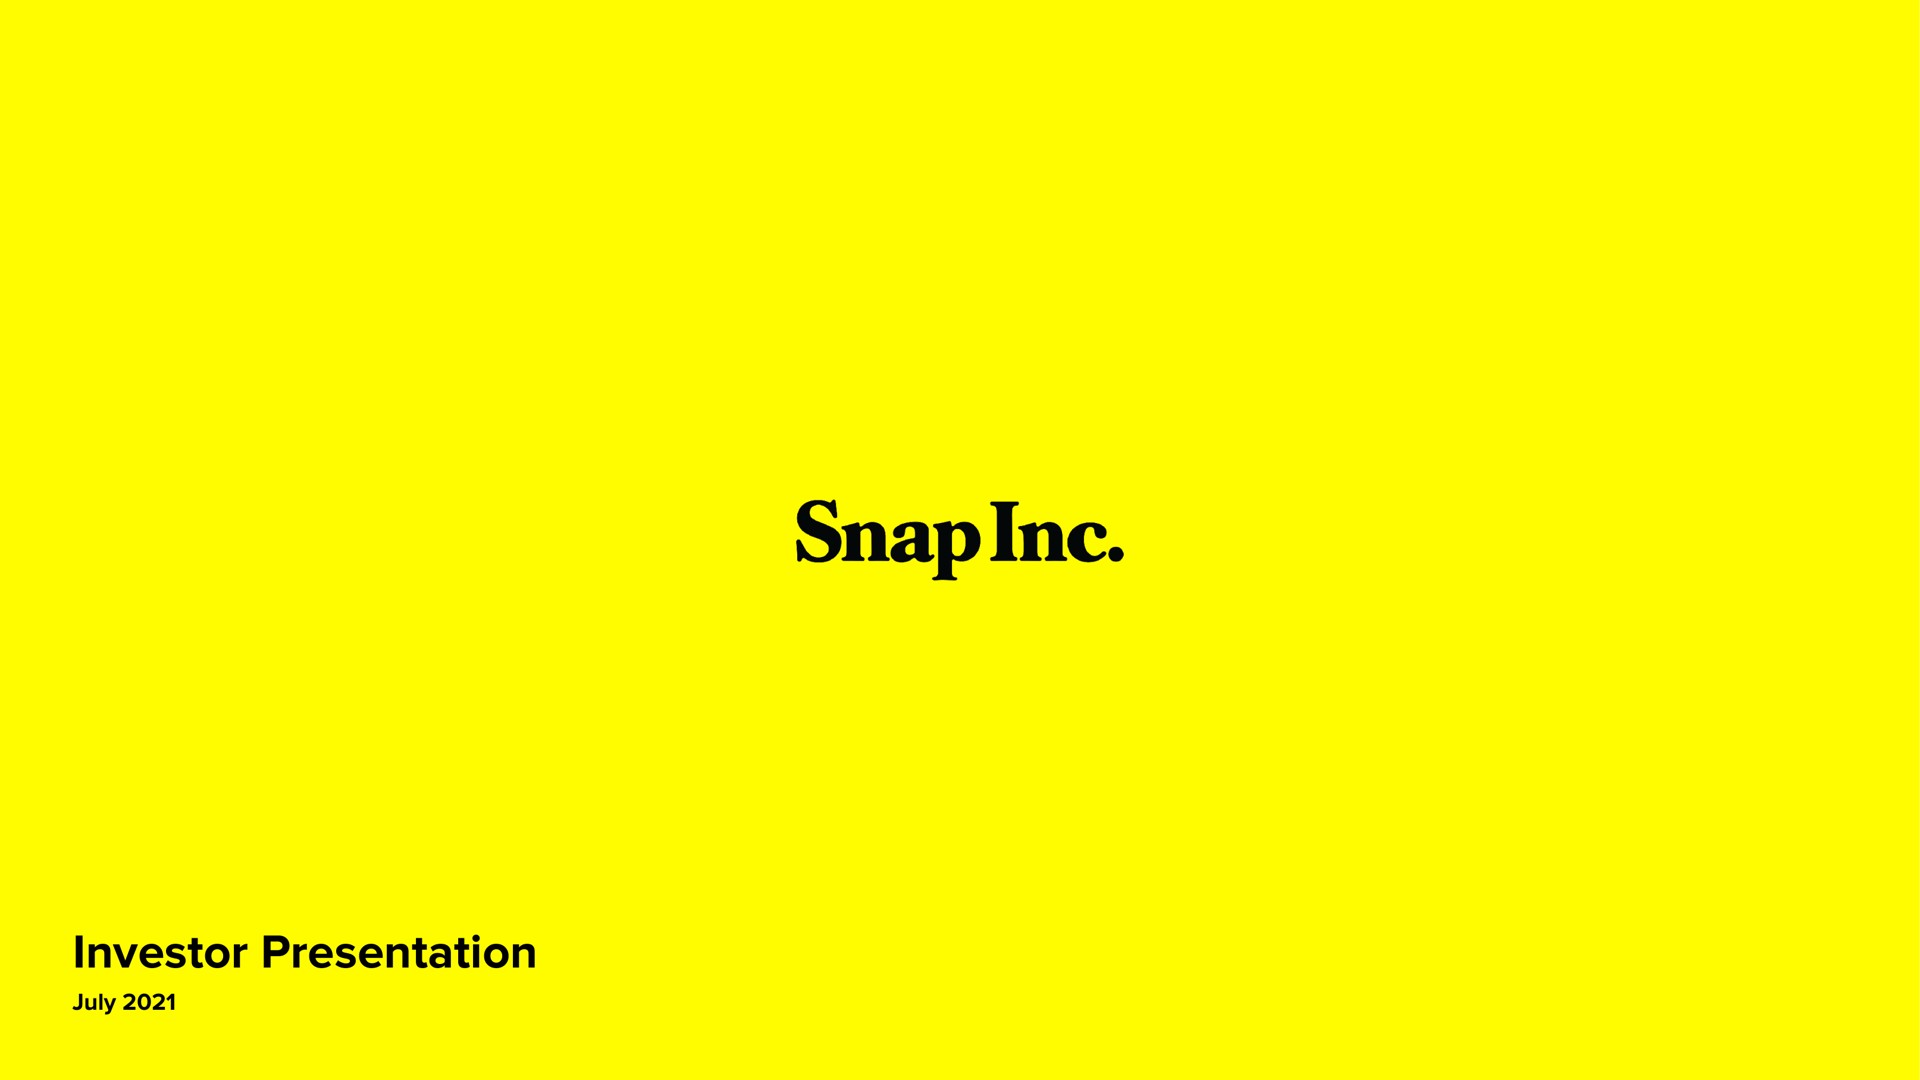 snap | Snap Inc